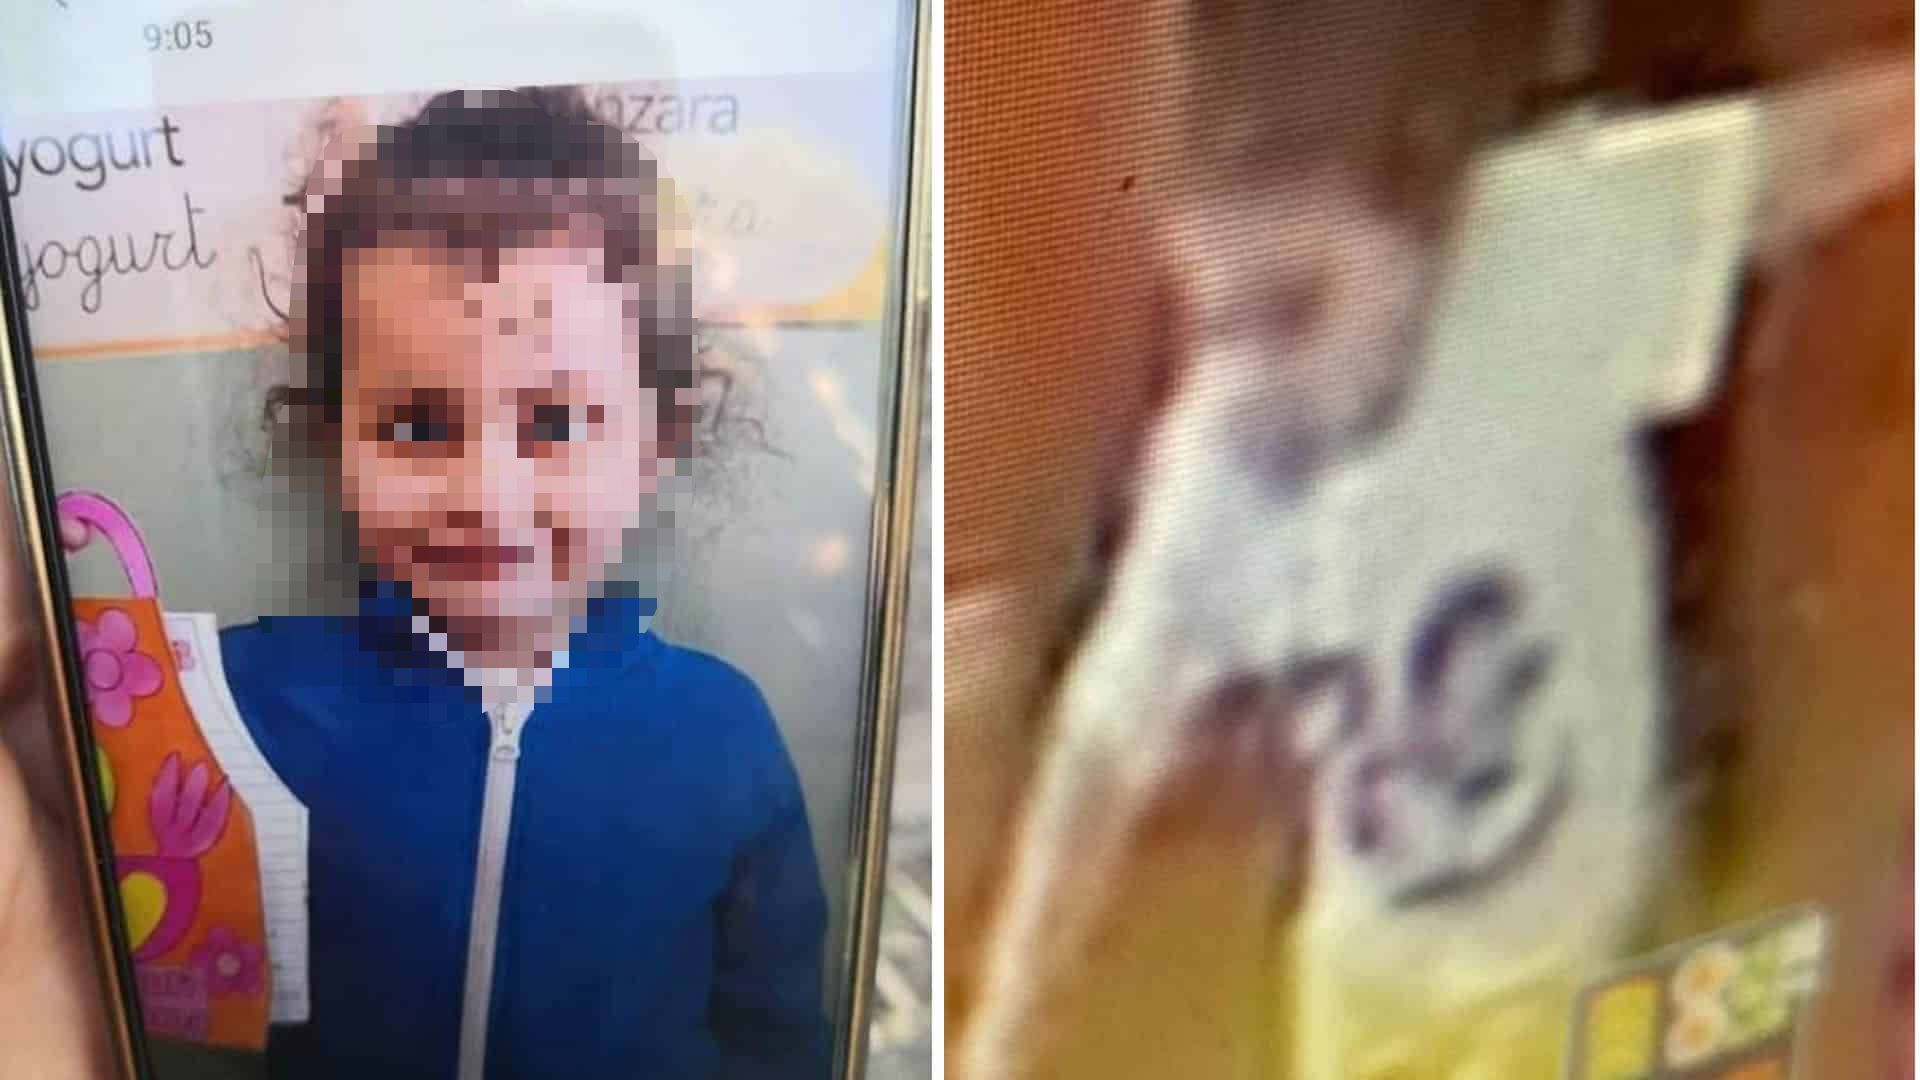 bambina 5 anni rapita